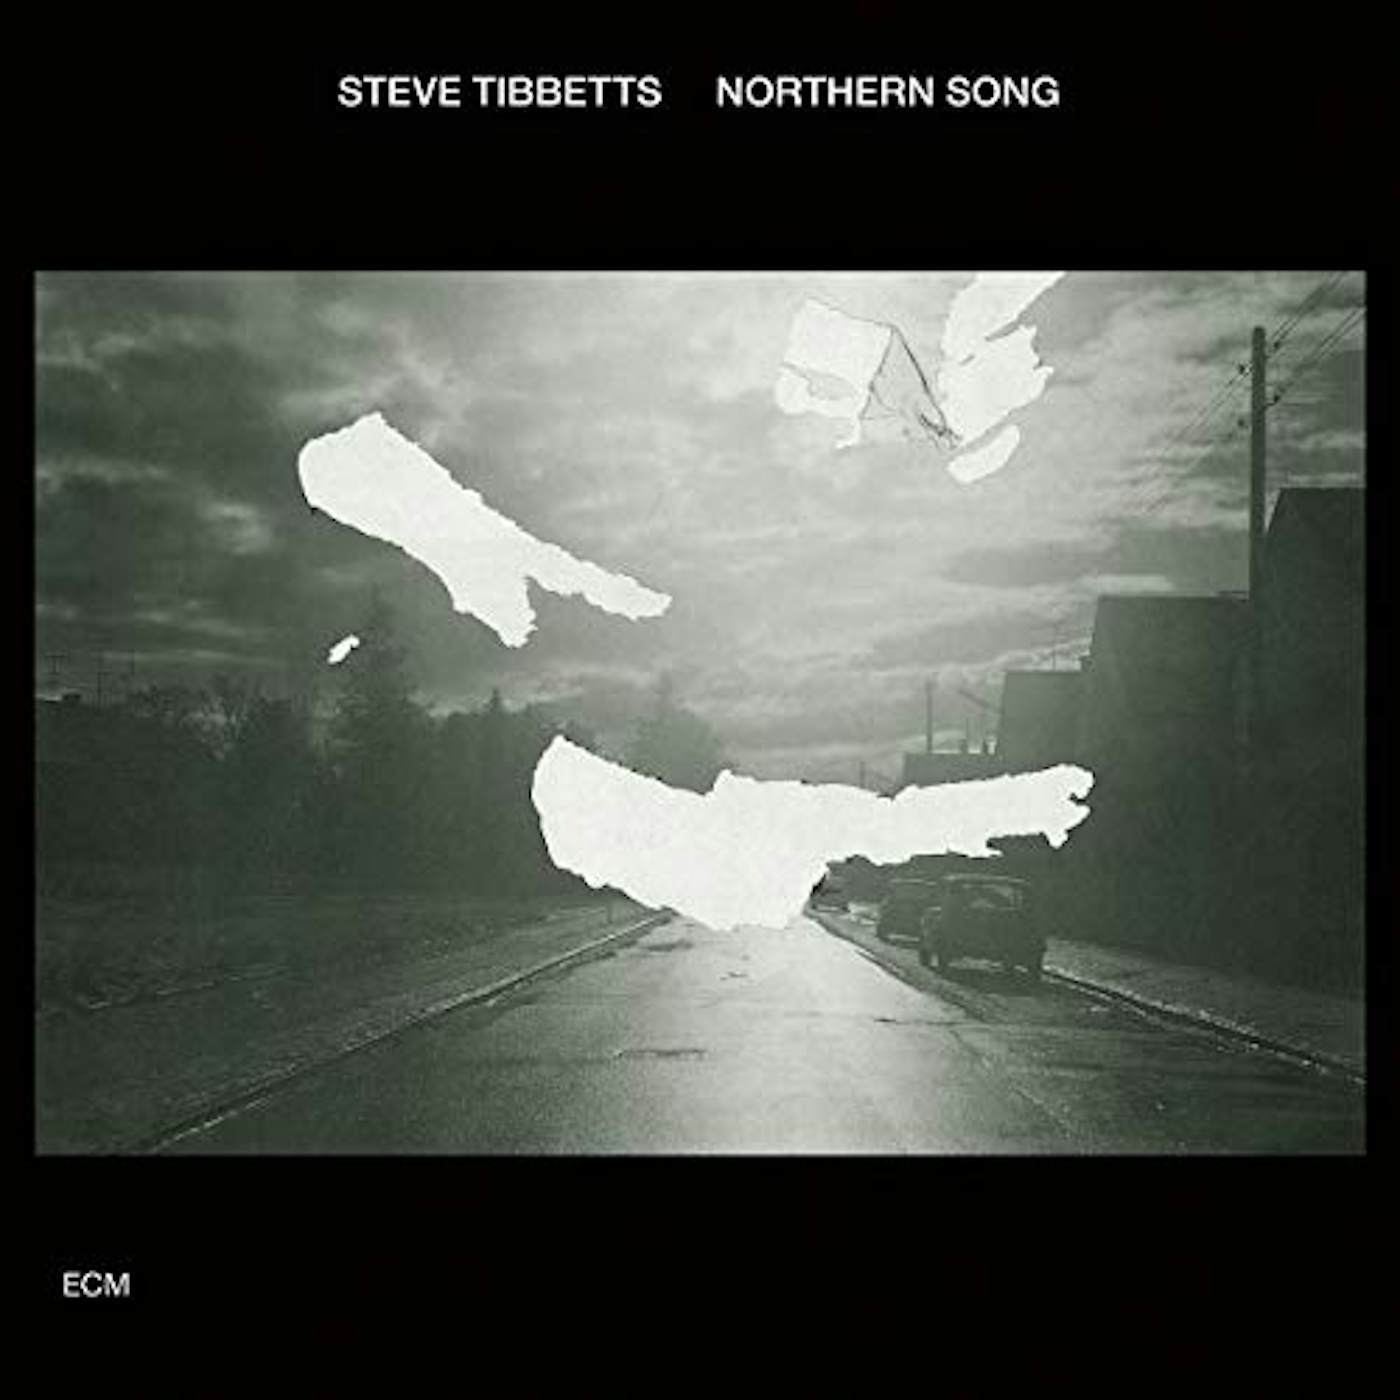 Steve Tibbetts Northern Song CD